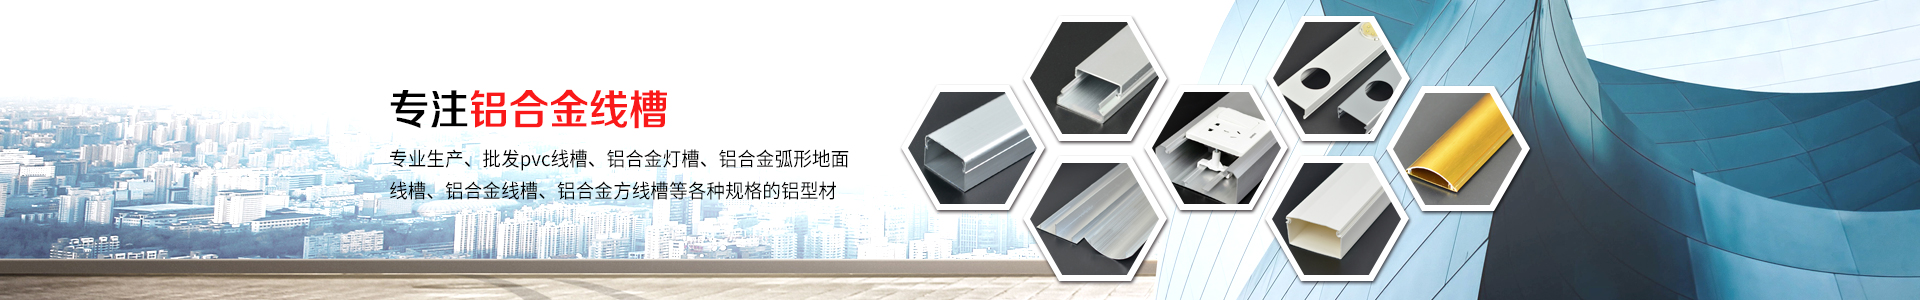 铝合金线槽的分类及规格-江阴市鸣诚铝业有限公司